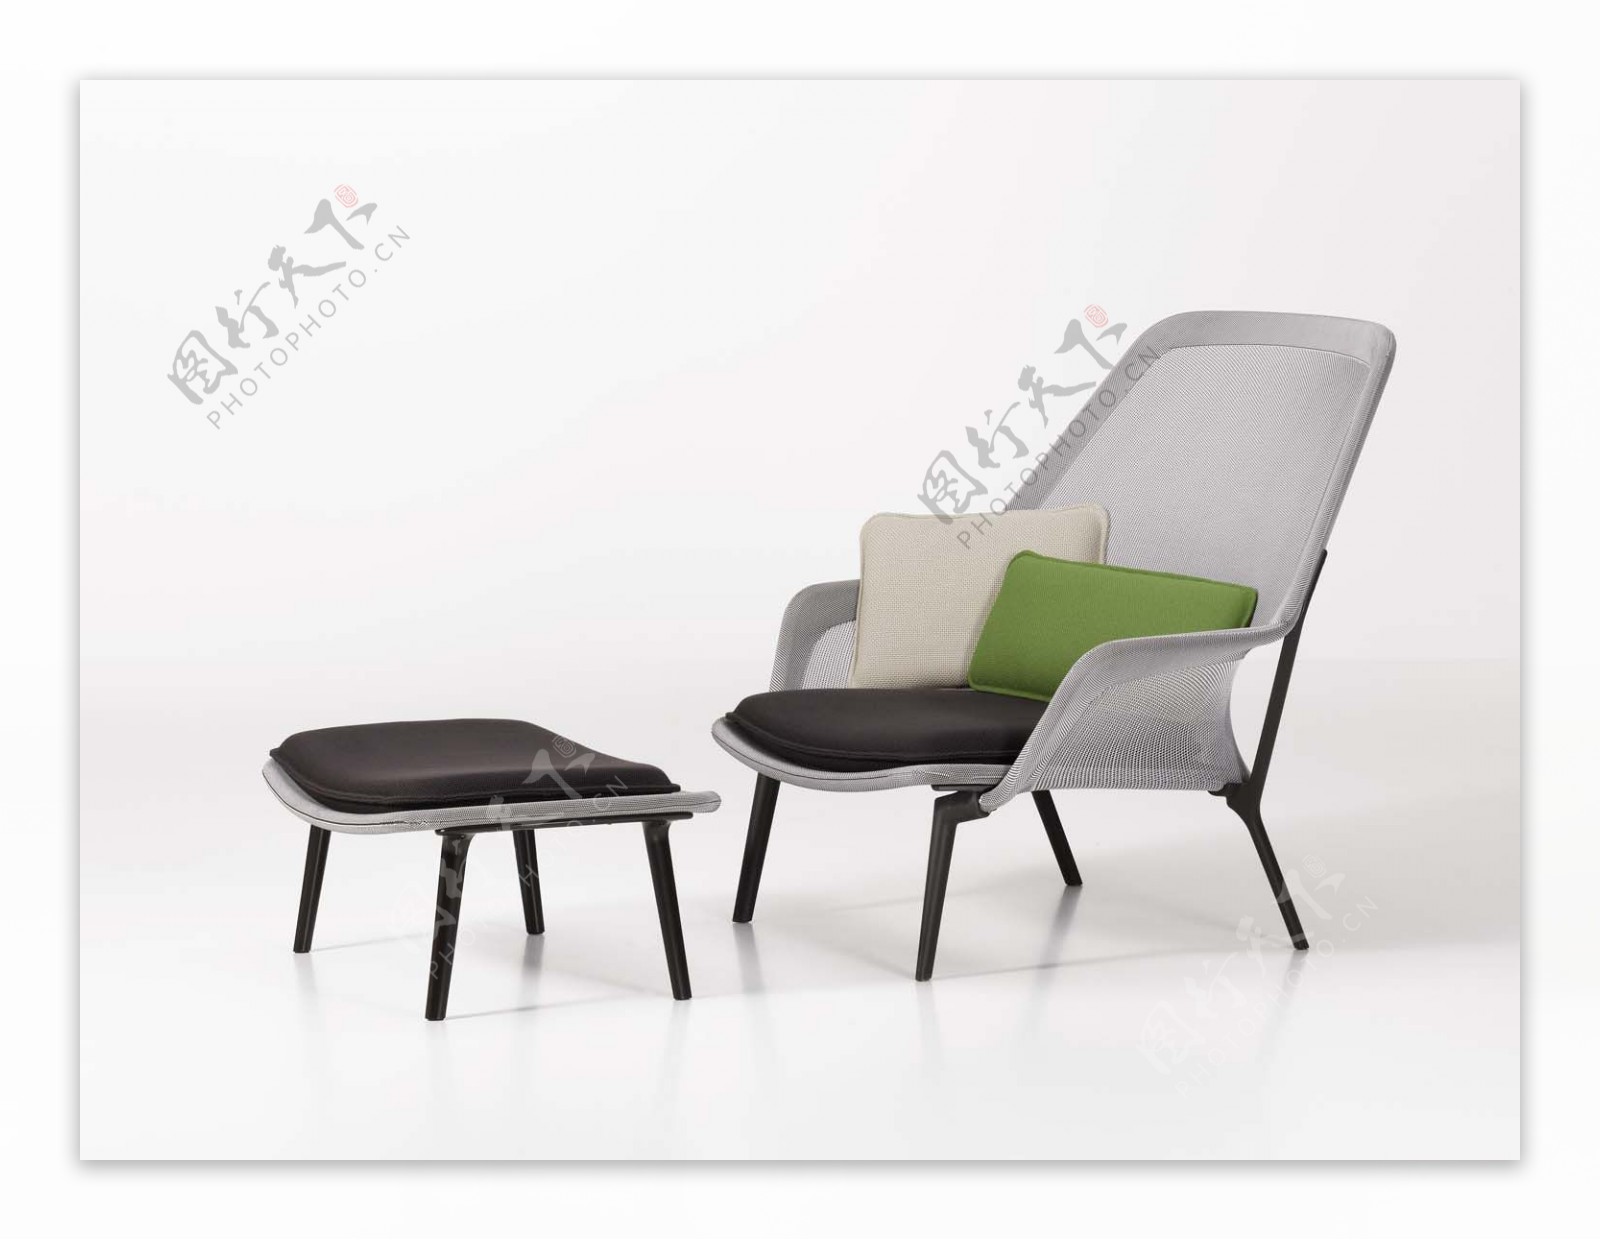 单人椅子素材3D模型素材